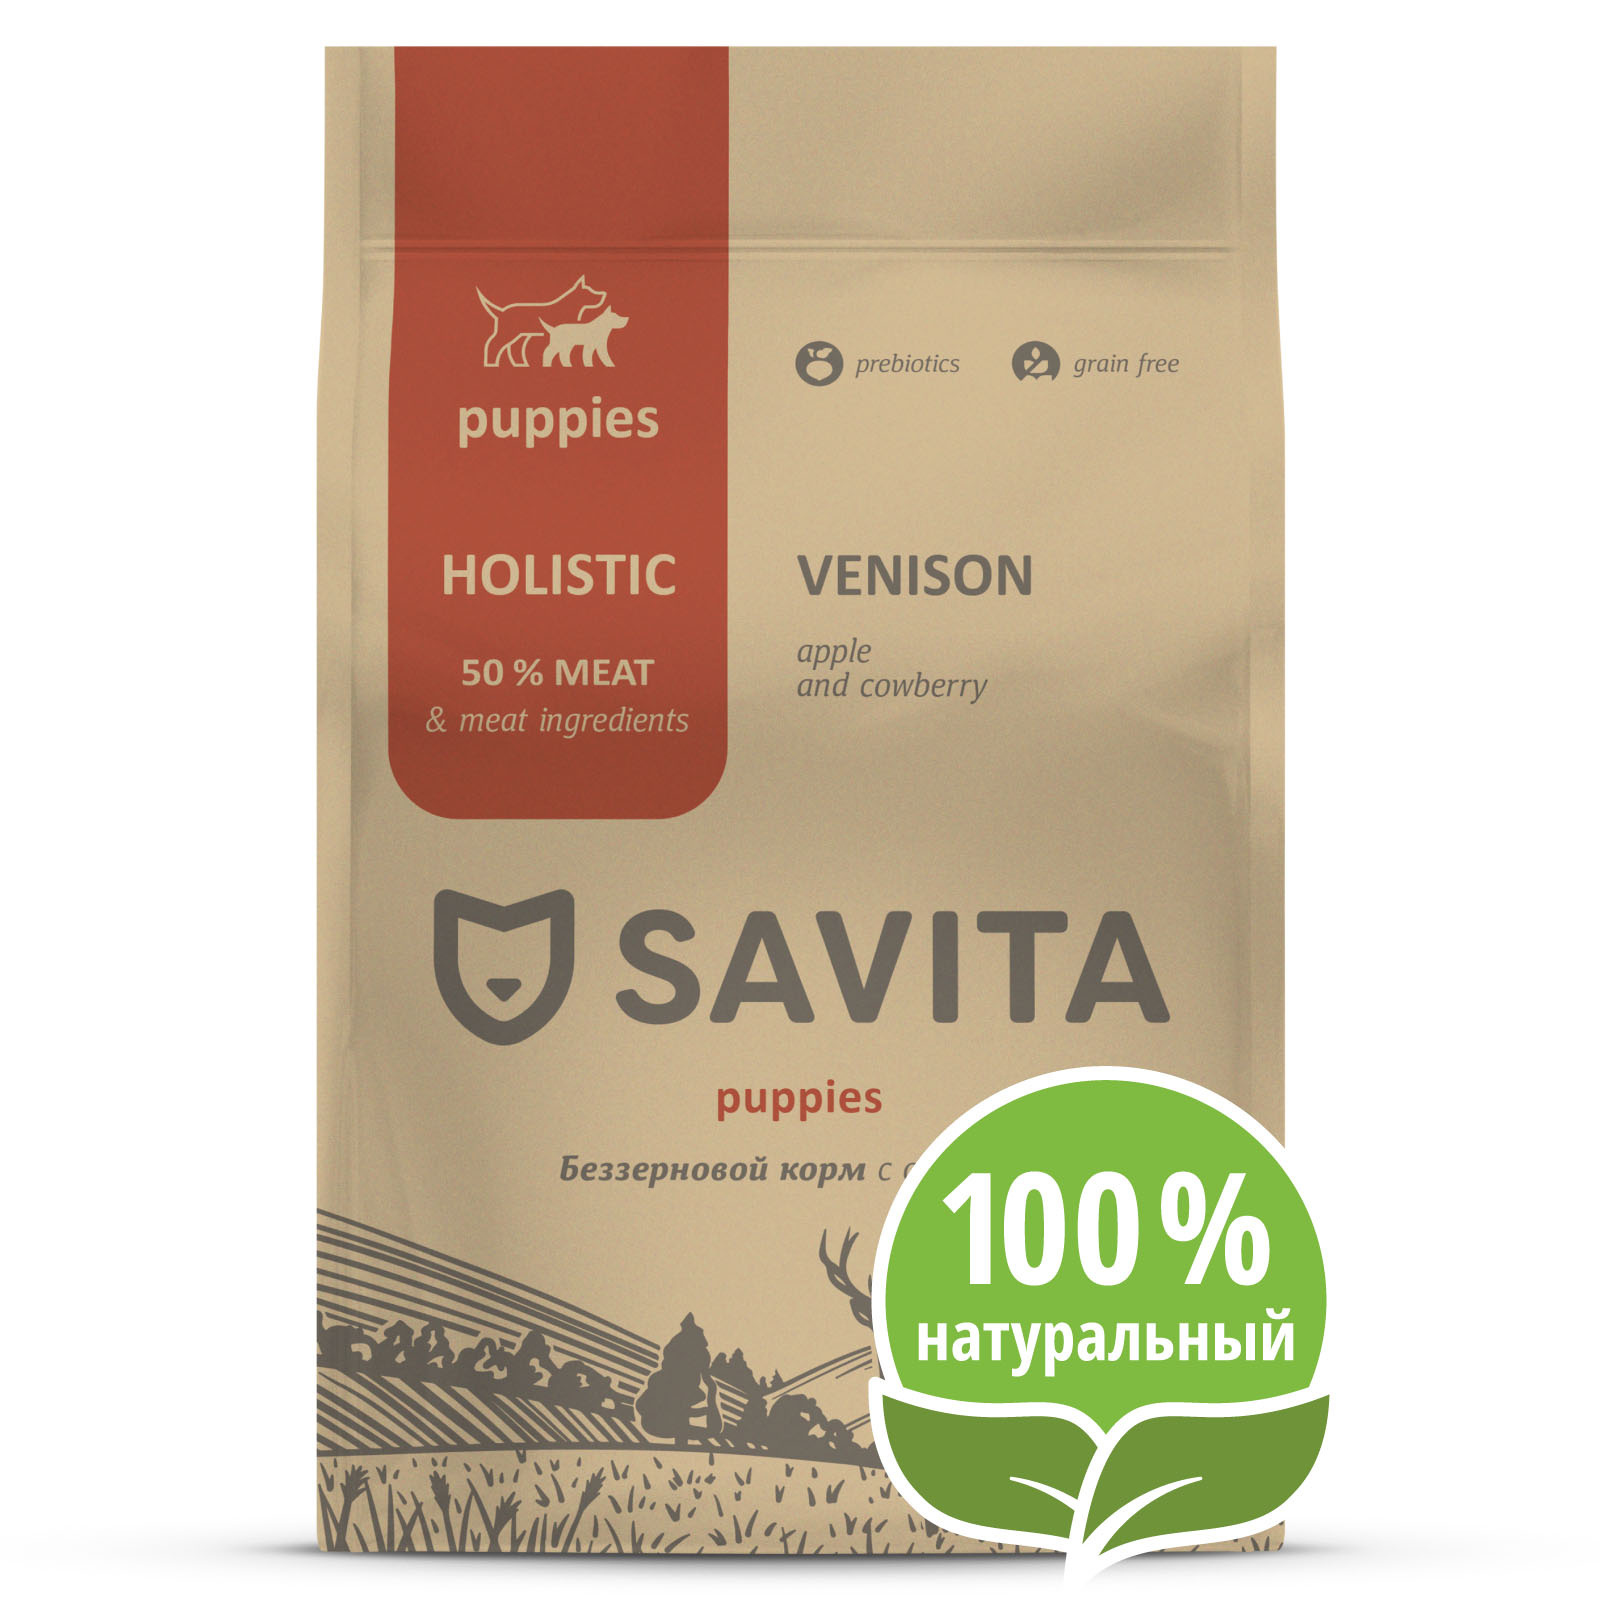 Корм SAVITA беззерновой корм для щенков с олениной (10 кг) Корм SAVITA беззерновой корм для щенков с олениной (10 кг) - фото 1